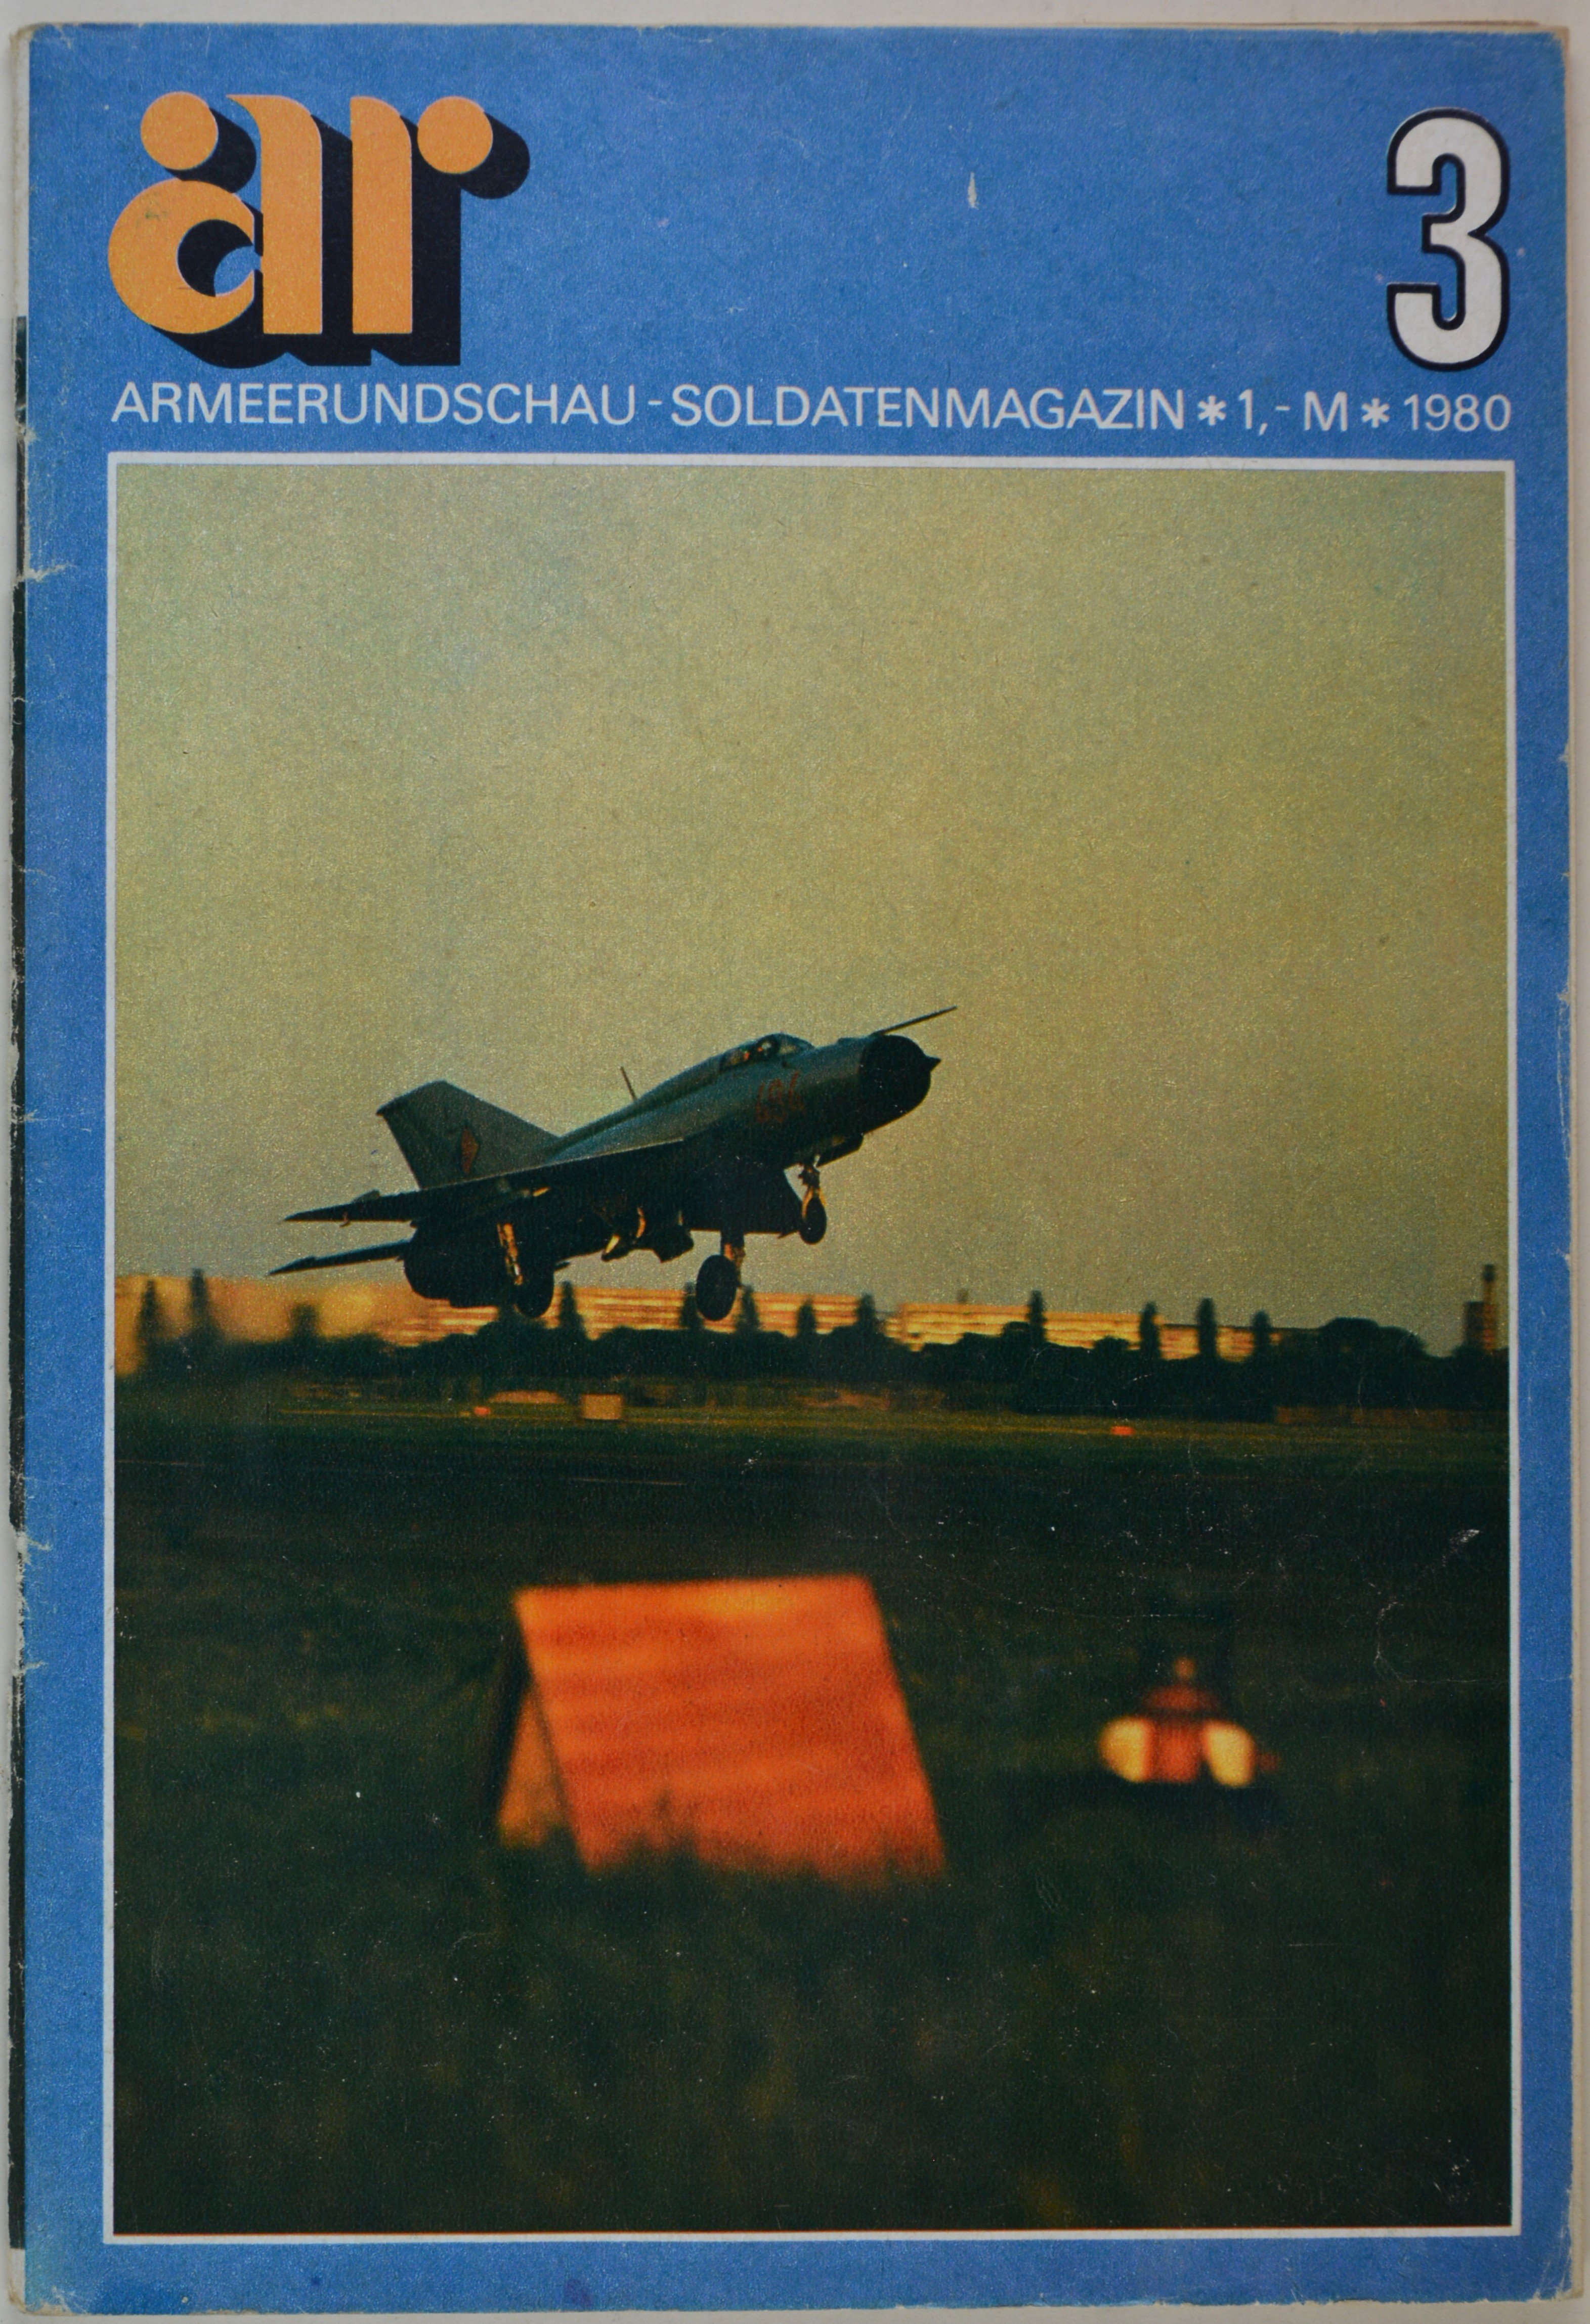 Armeerundschau - Soldatenmagazin (1980), Heft 3 (DDR Geschichtsmuseum im Dokumentationszentrum Perleberg CC BY-SA)